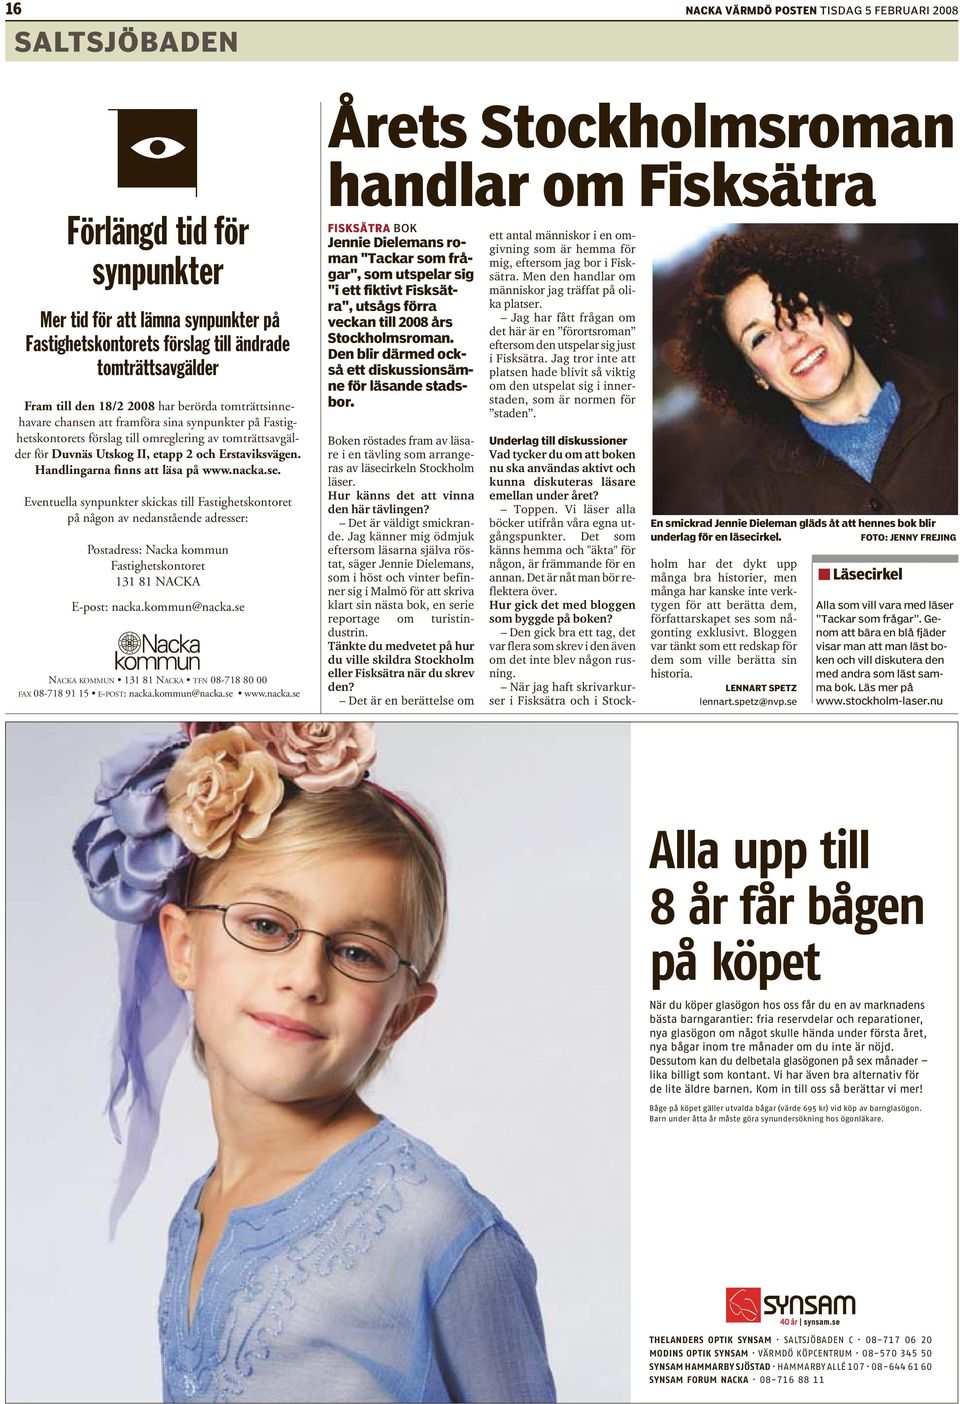 Handlingarna finns att läsa på www.nacka.se.